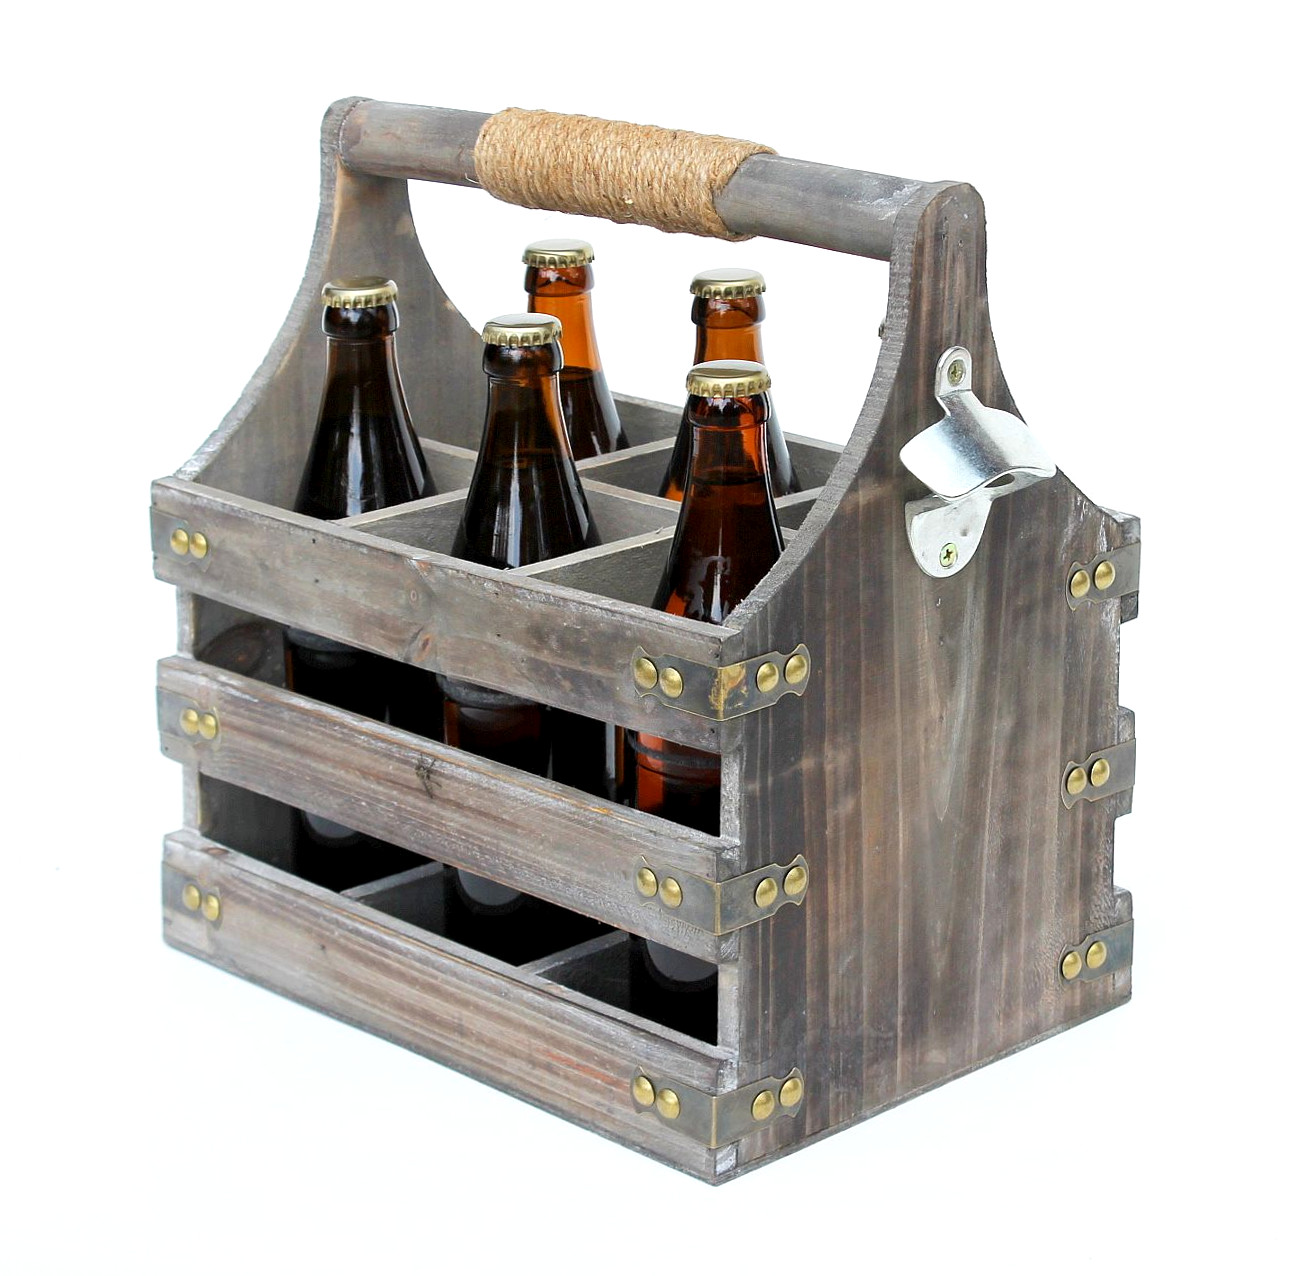 DanDiBo Bierträger aus Holz mit Flaschenkorb Flaschenöffner 93860 Männergeschenke-DanDiBo Männerhandtasche Öffner Flaschenträger